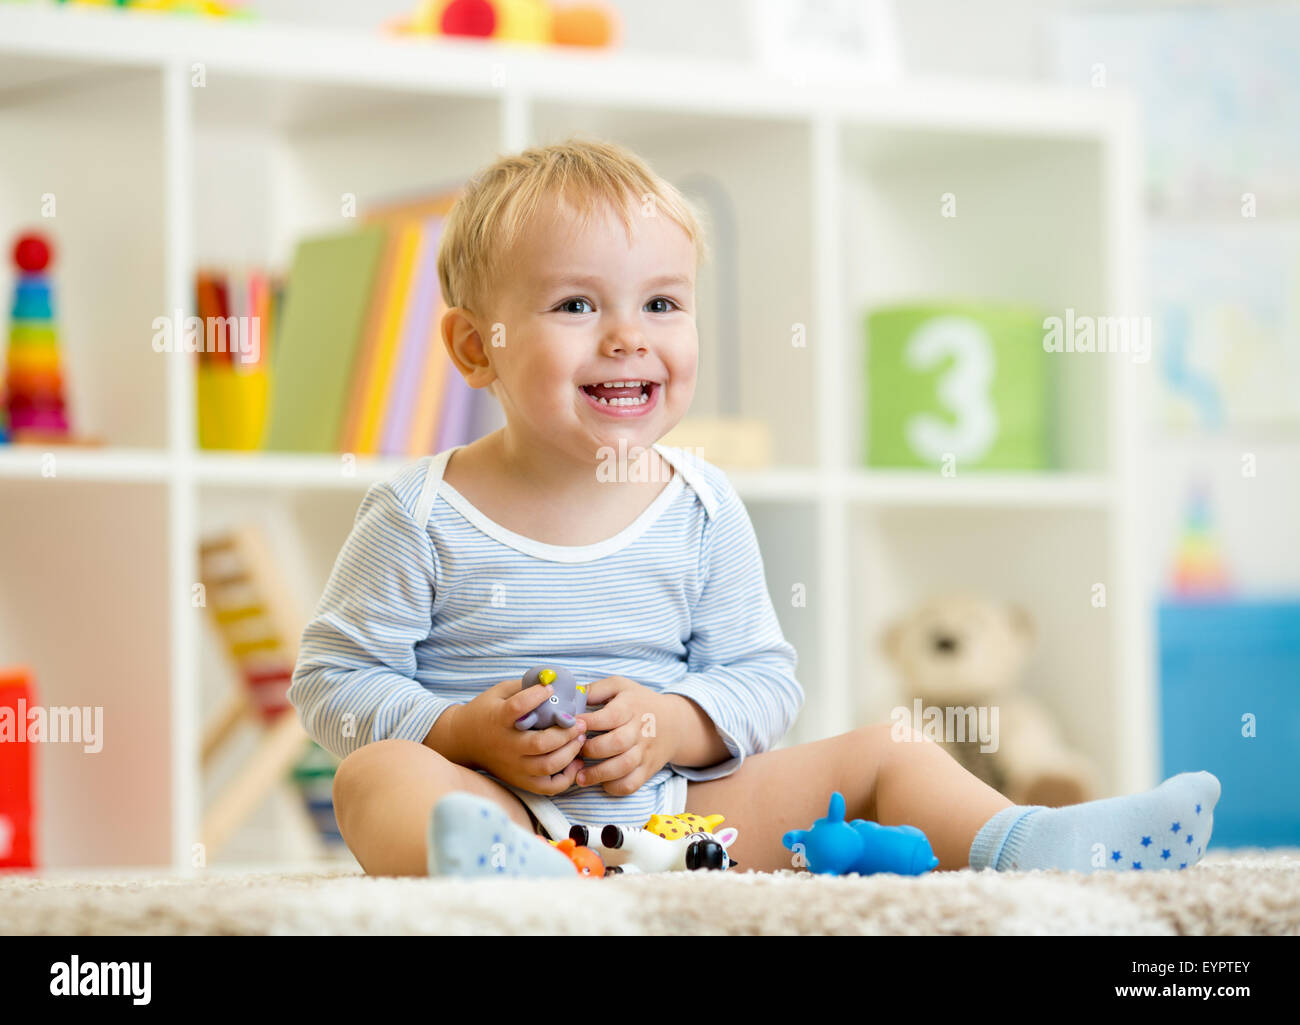 Petit enfant garçon joue avec des jouets animaux Banque D'Images